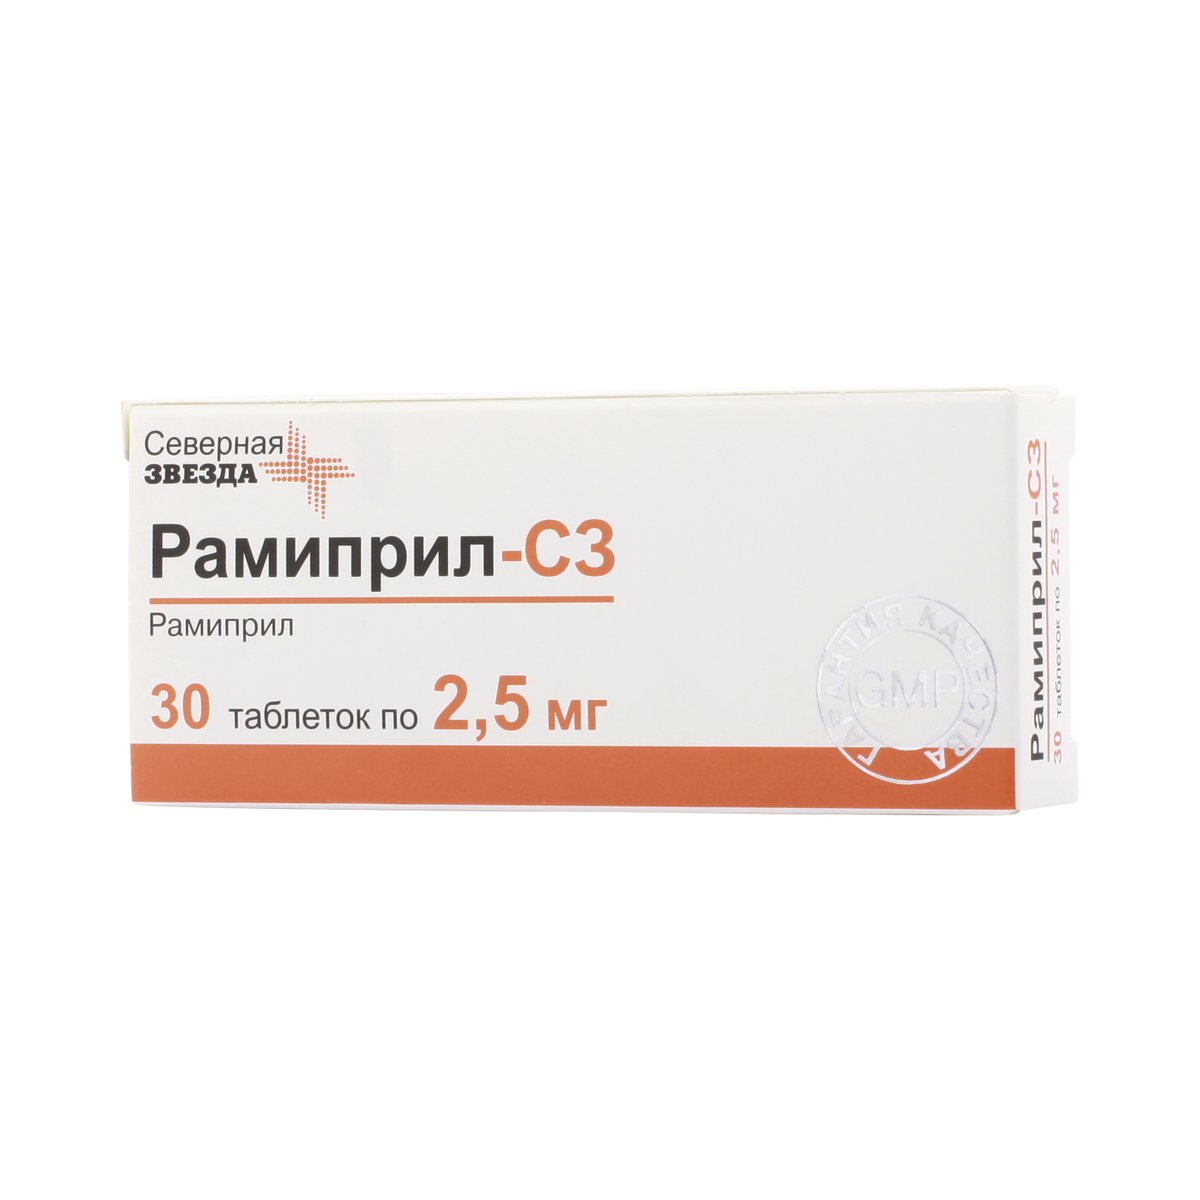 Рамиприл-сз (таблетки, 30 шт, 2,5 мг) - цена,  онлайн  .